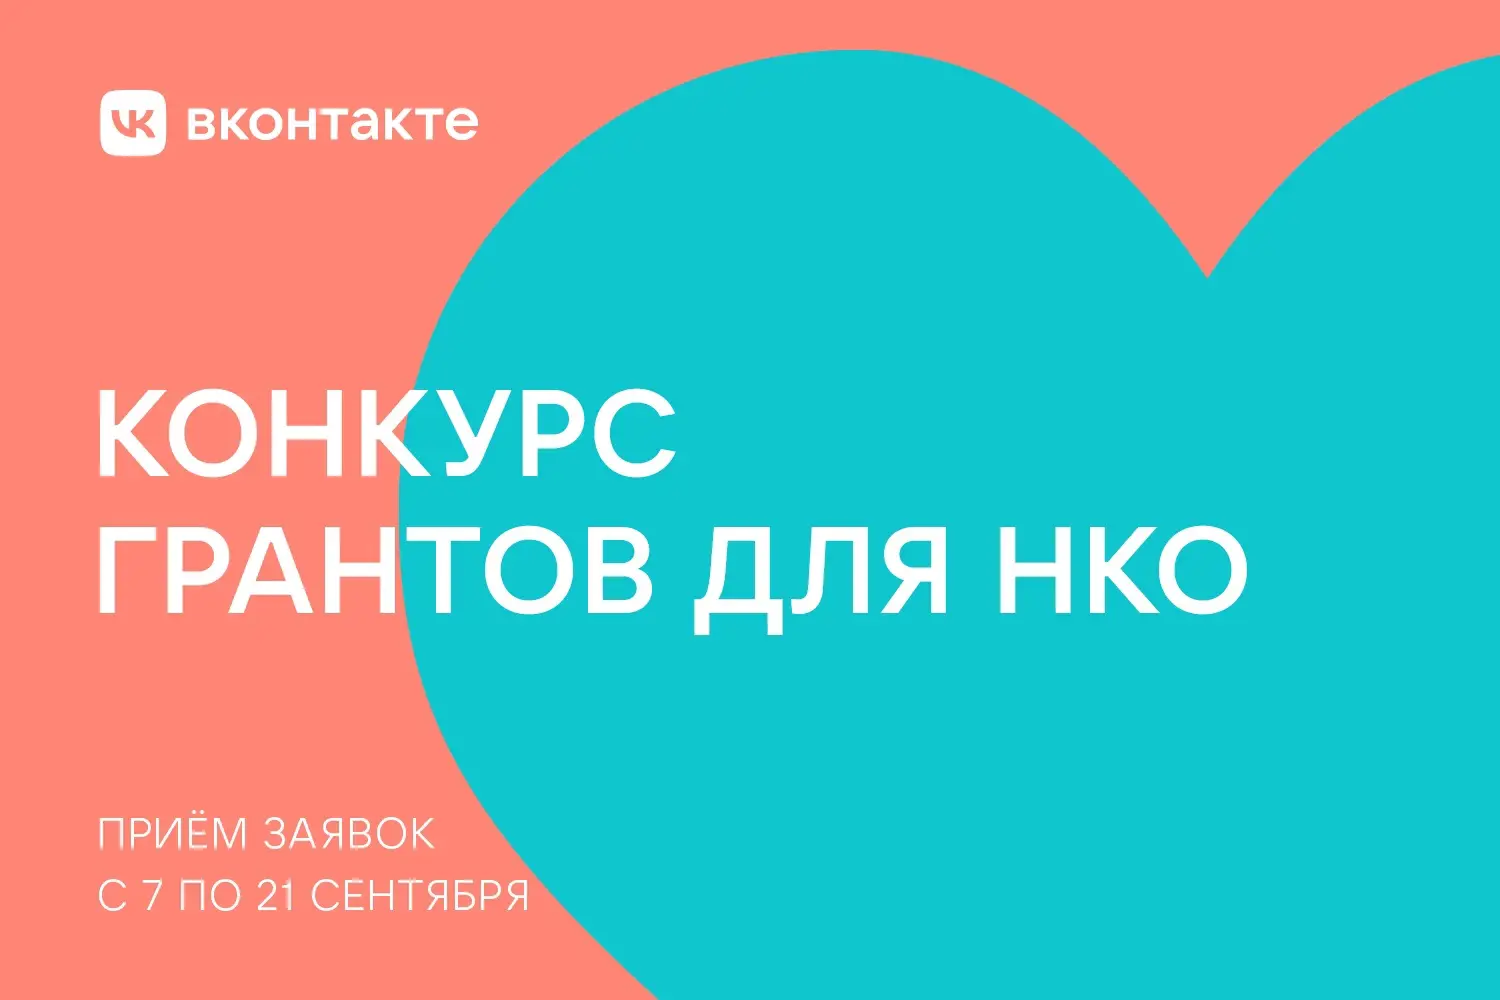 «ВКонтакте» запускает конкурс грантов для НКО, заявки принимают до 21 сентября